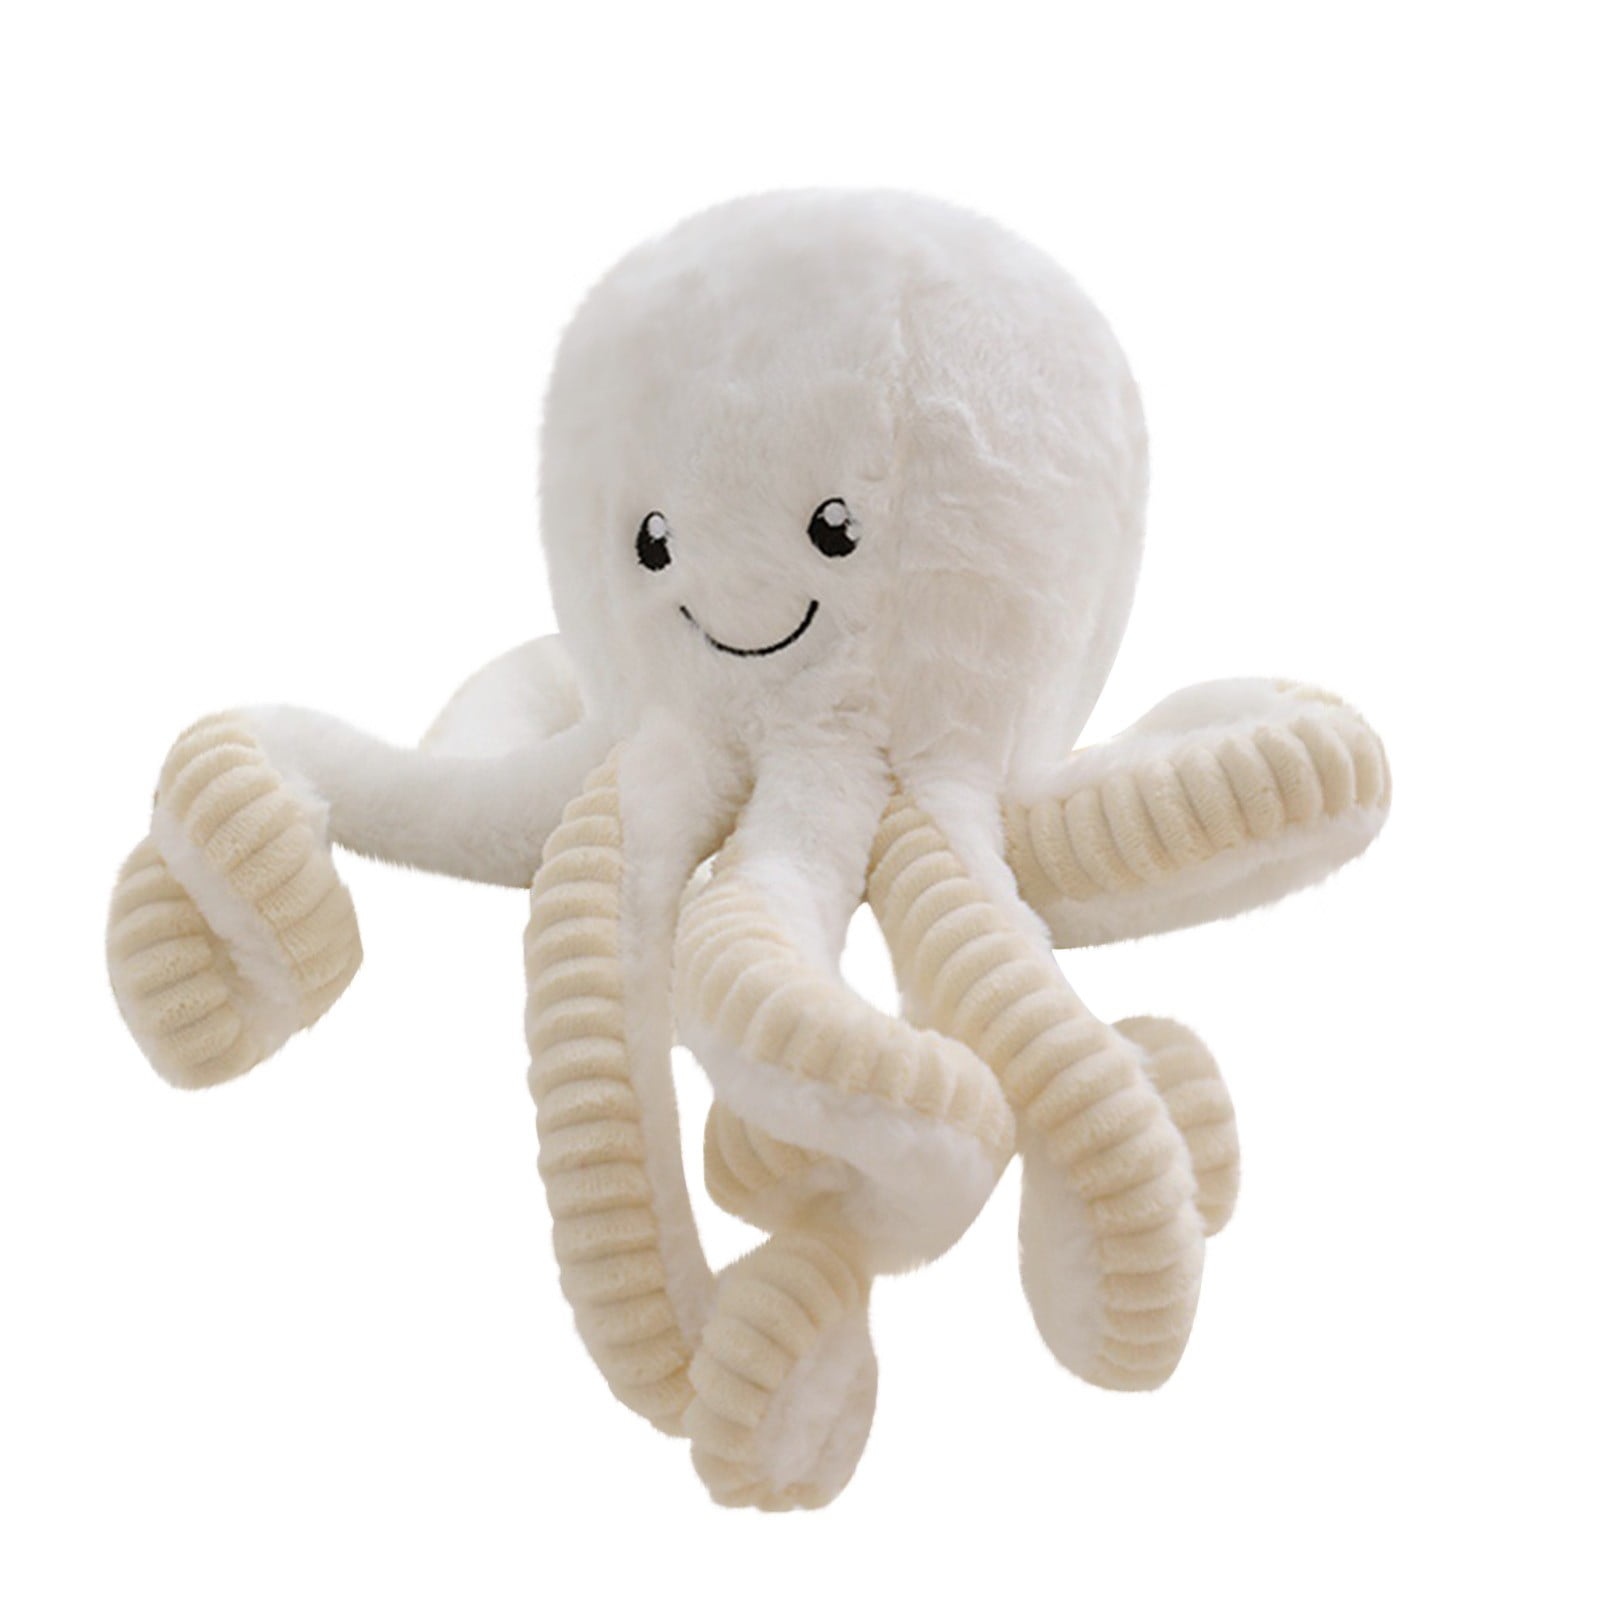 Splatoon Squid Blue Soft Plush Stuffed Doll Toy Teddy Figure Animal Cuddly Gift 